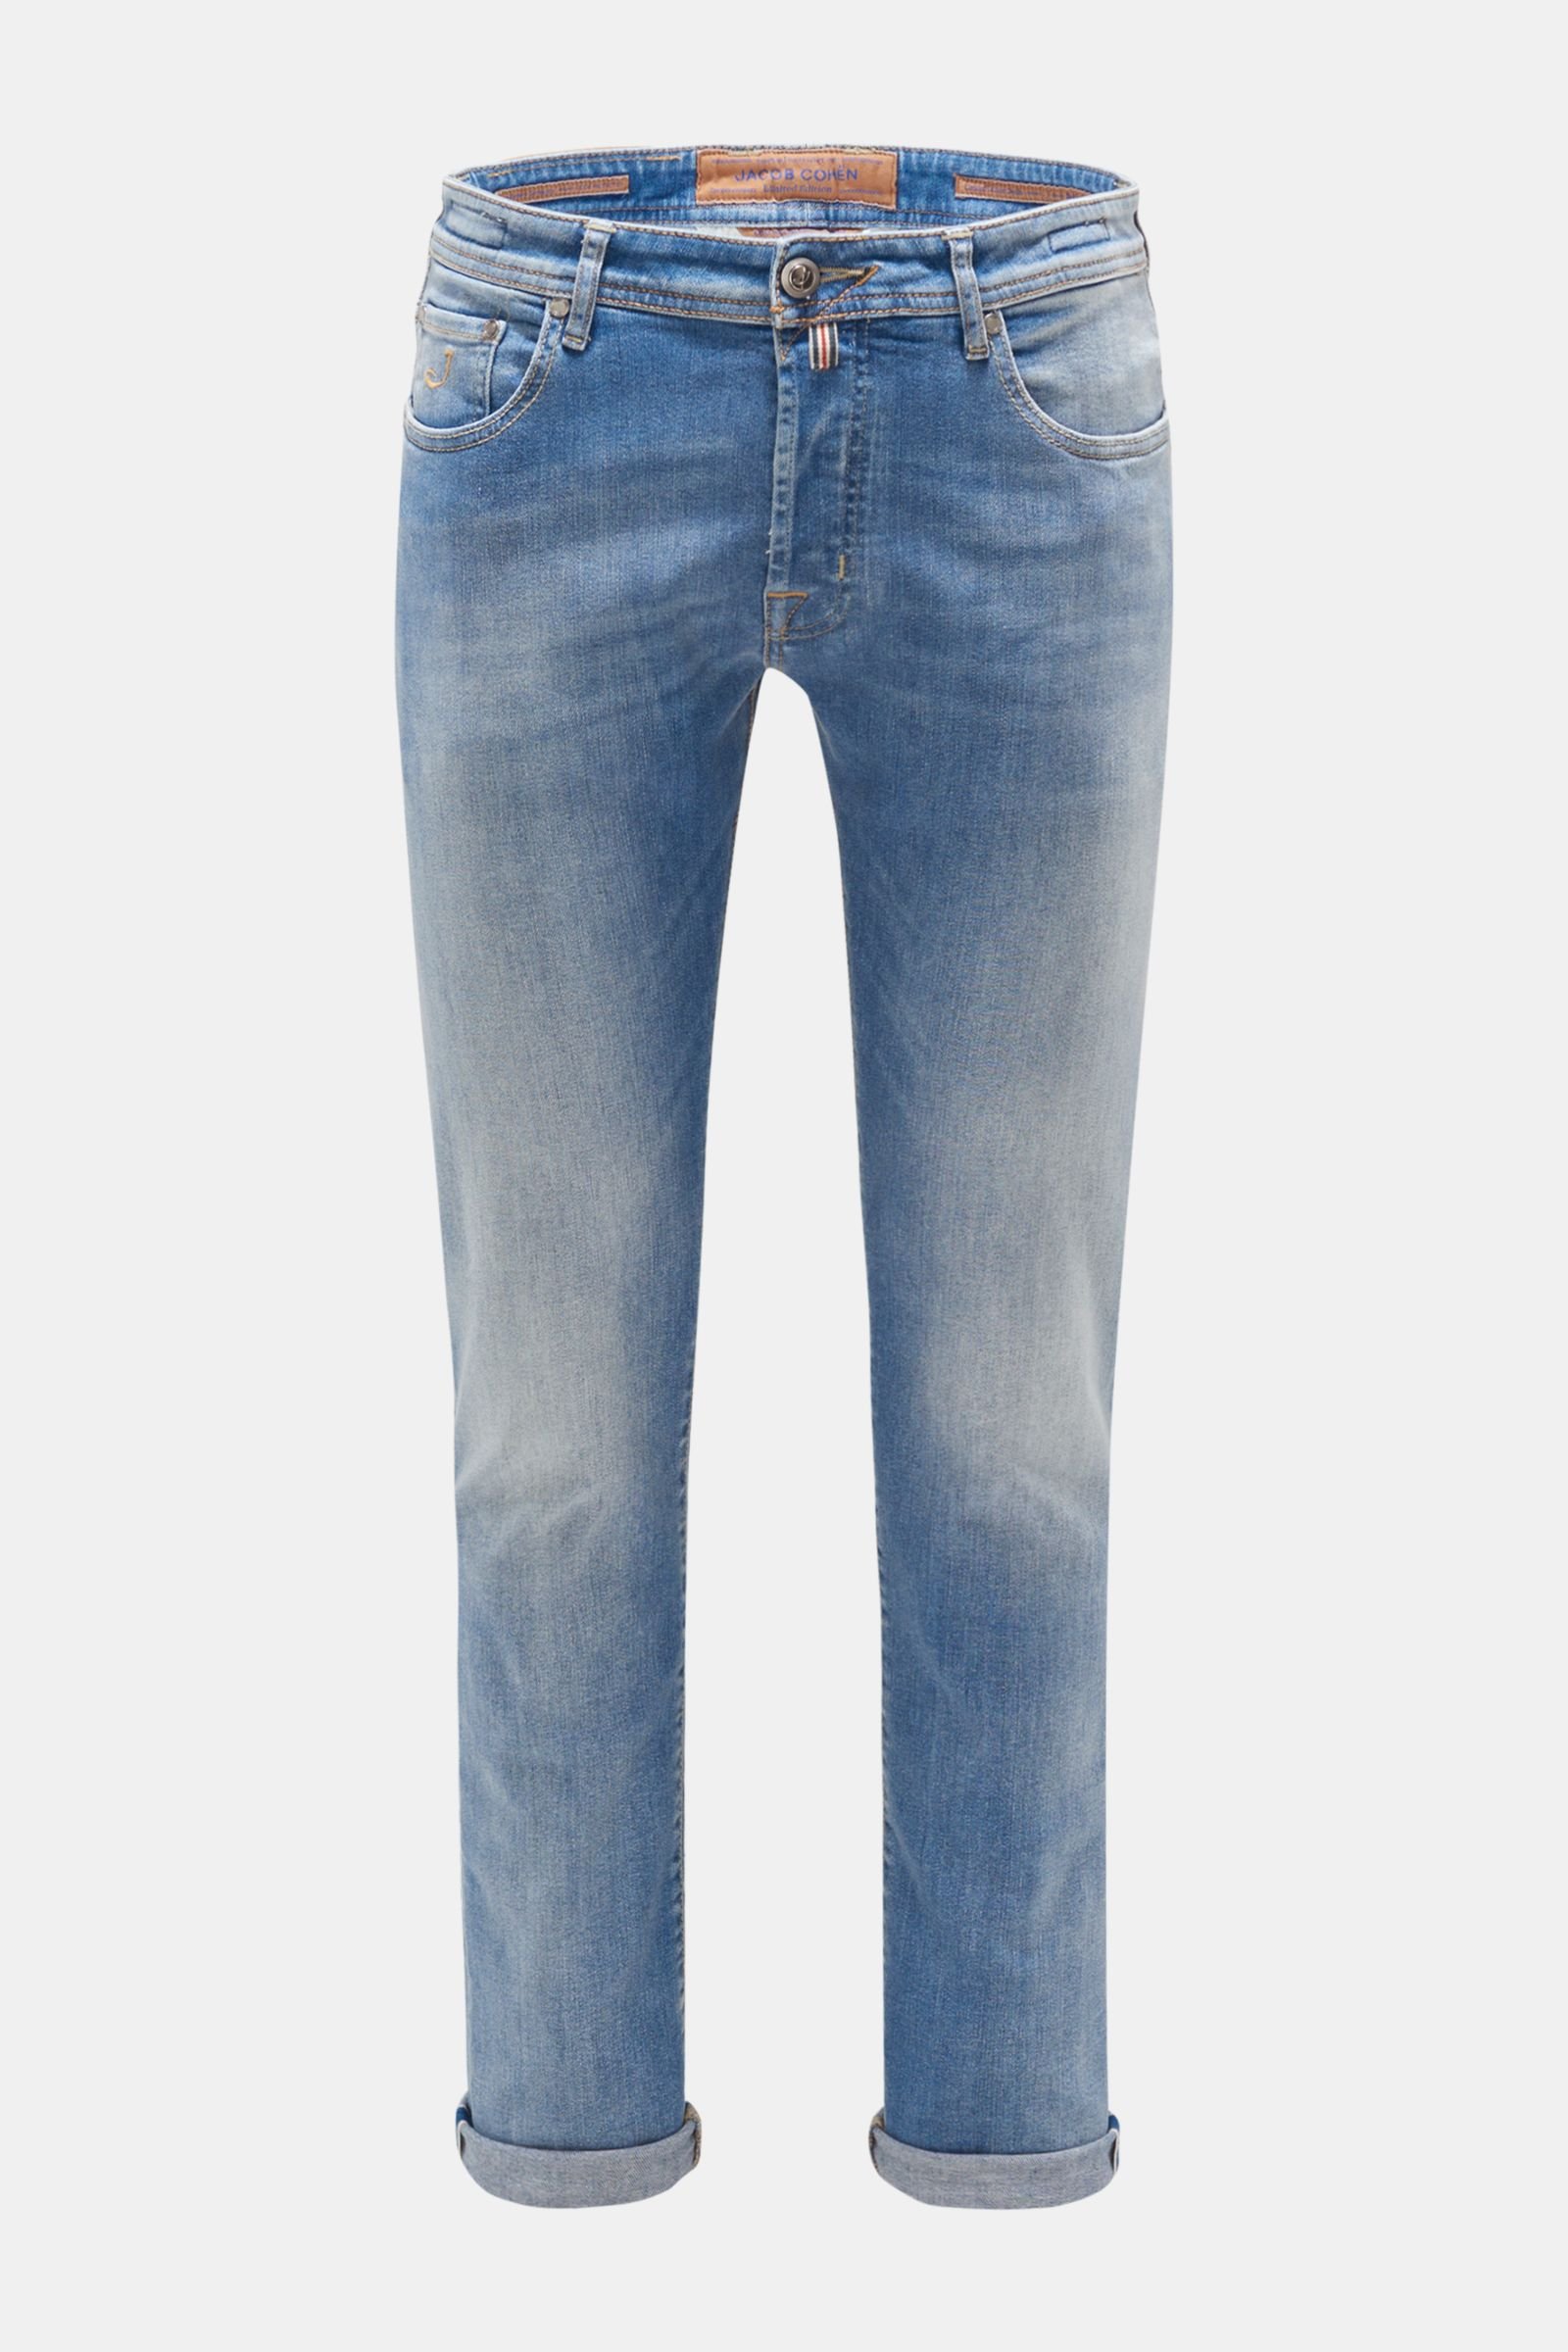 Jeans 'J688 Limited Comfort slim fit' light blue